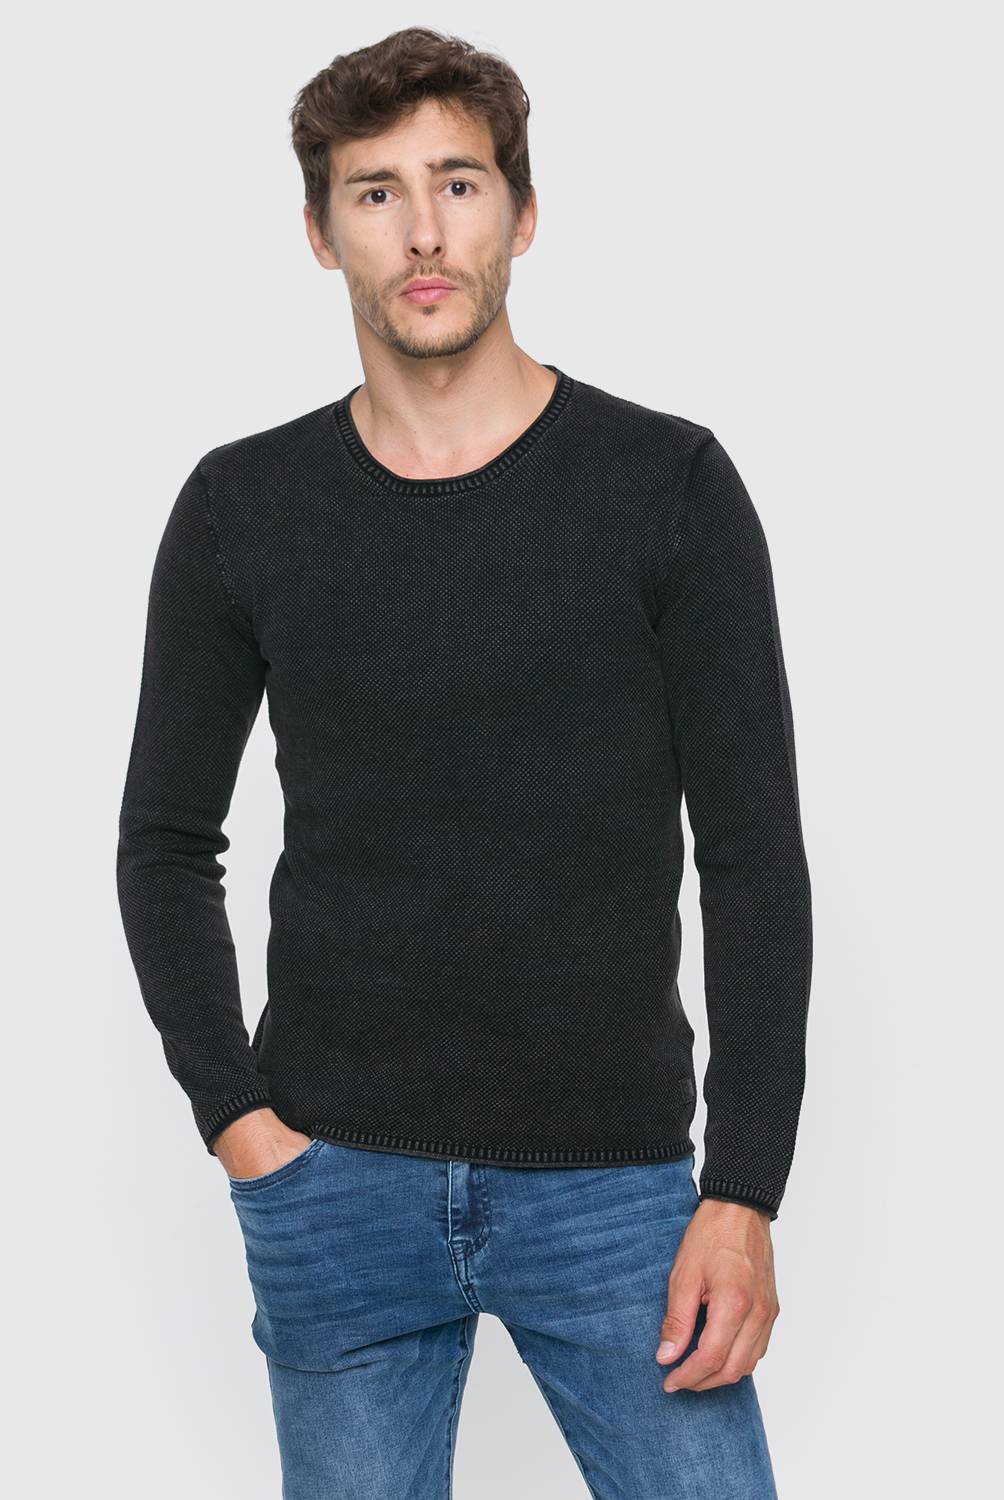 MOSSIMO - Sweater de Algodón Hombre